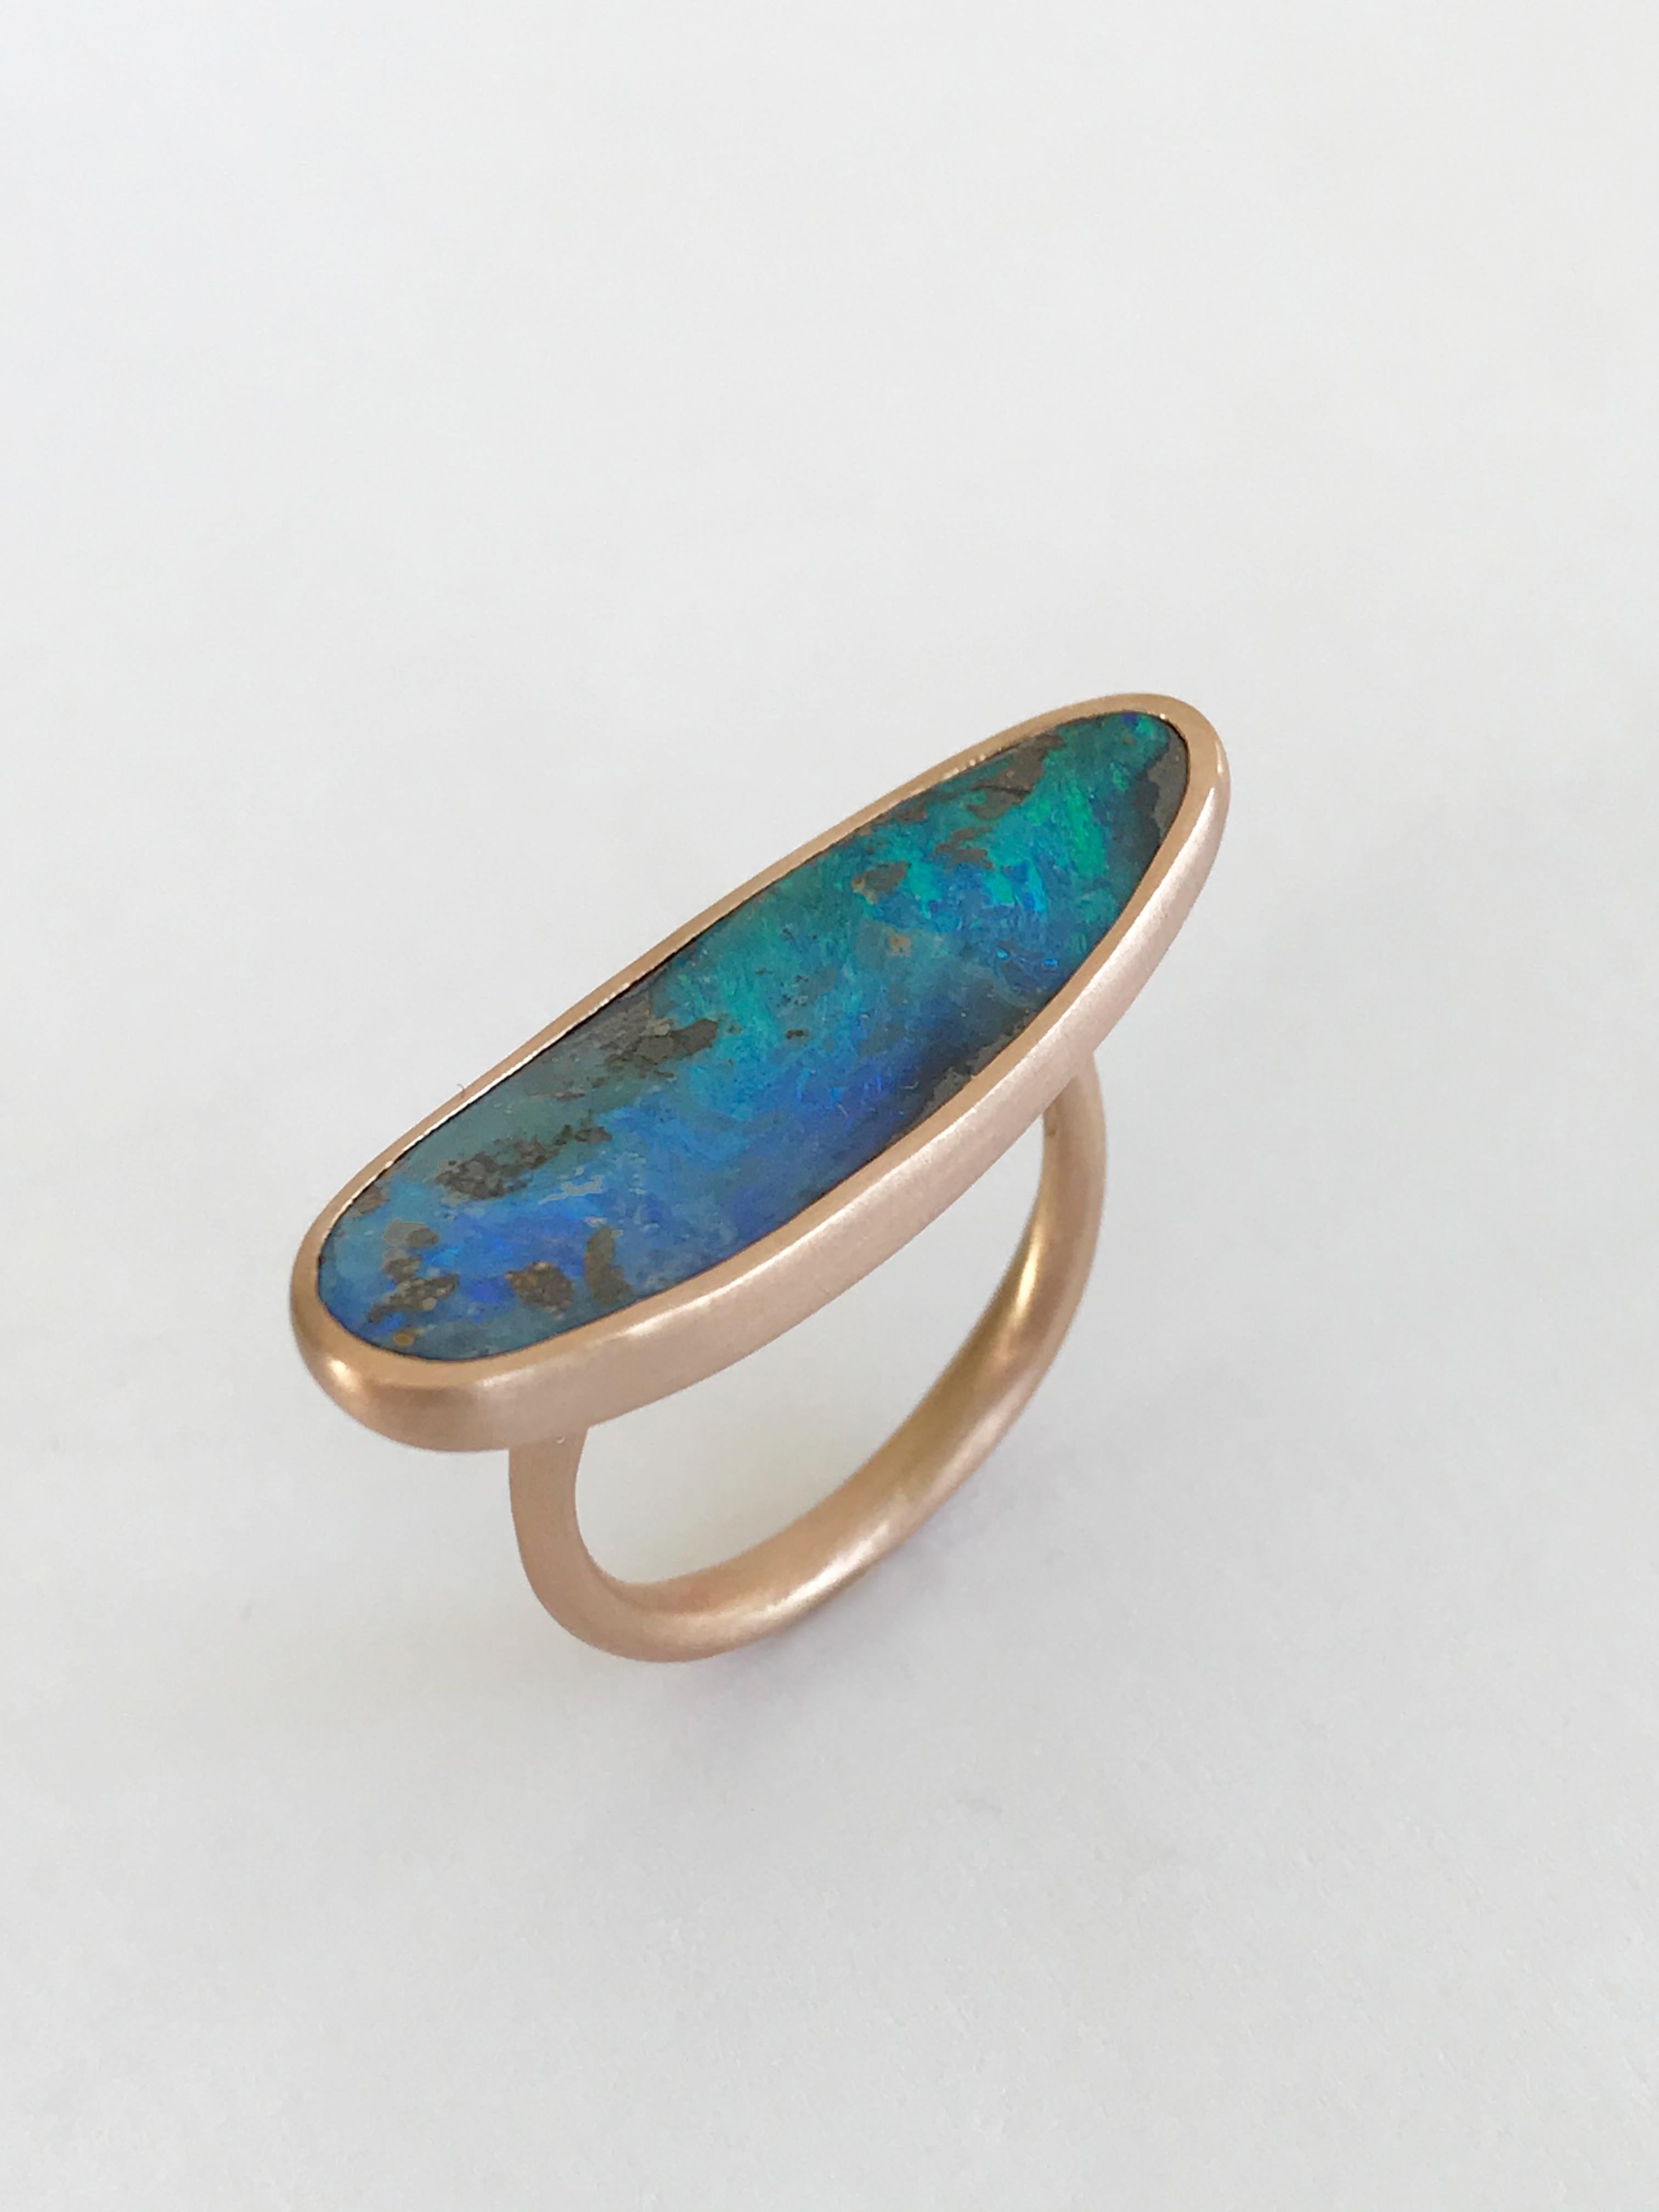 Dalben Very Long Boulder Opal Rose Gold Ring For Sale 3